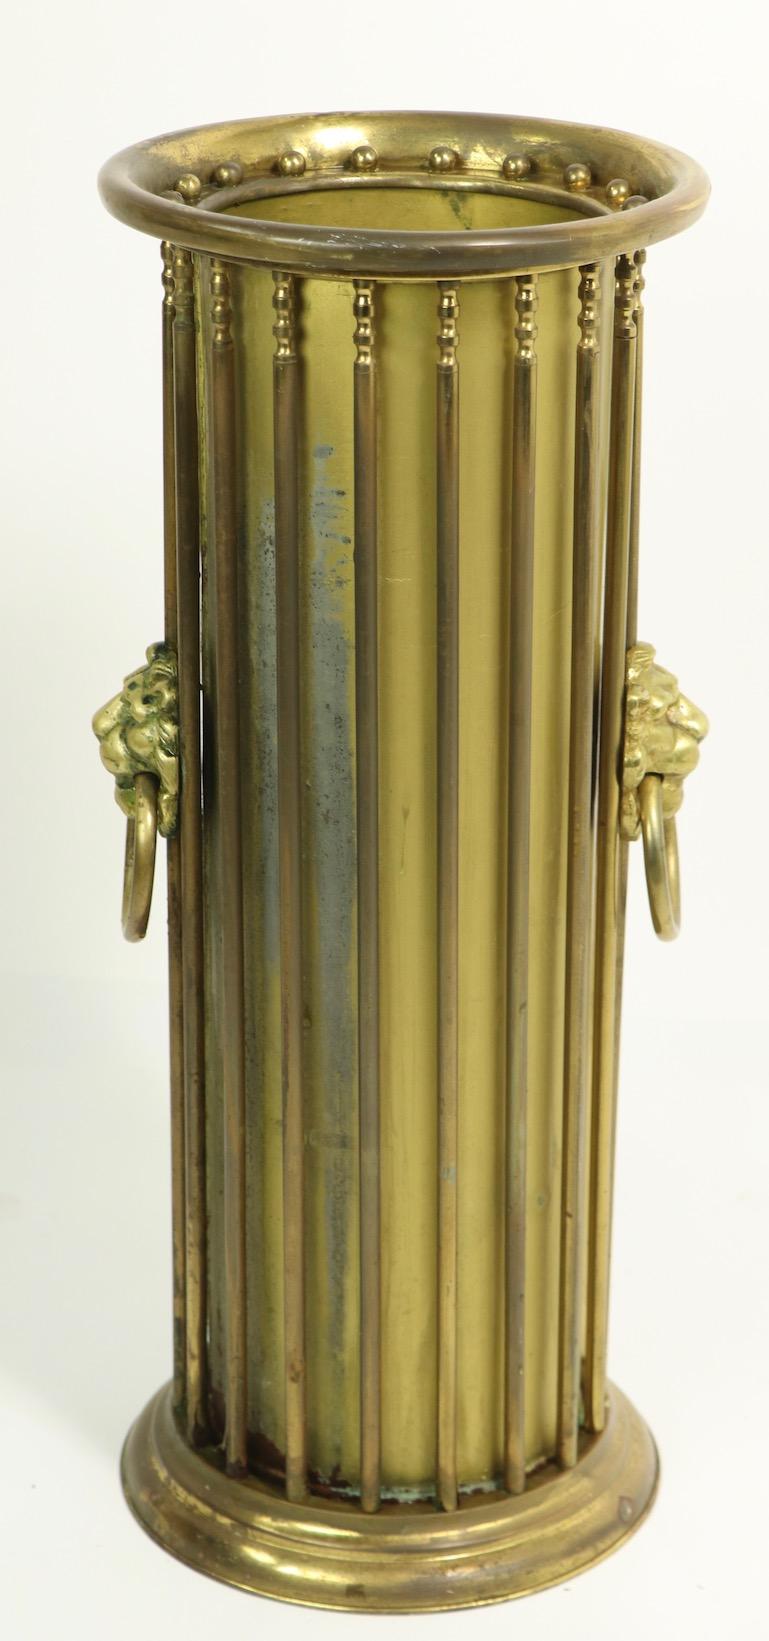 Klassisch-revivalistischer Schirm- oder Stockständer aus Messing in zylindrischer Form mit sich wiederholenden Messingstäben und Löwenköpfen aus Messingguss. Vermutlich in den 1920er Jahren in Amerika im englischen Stil hergestellt, weist dieses